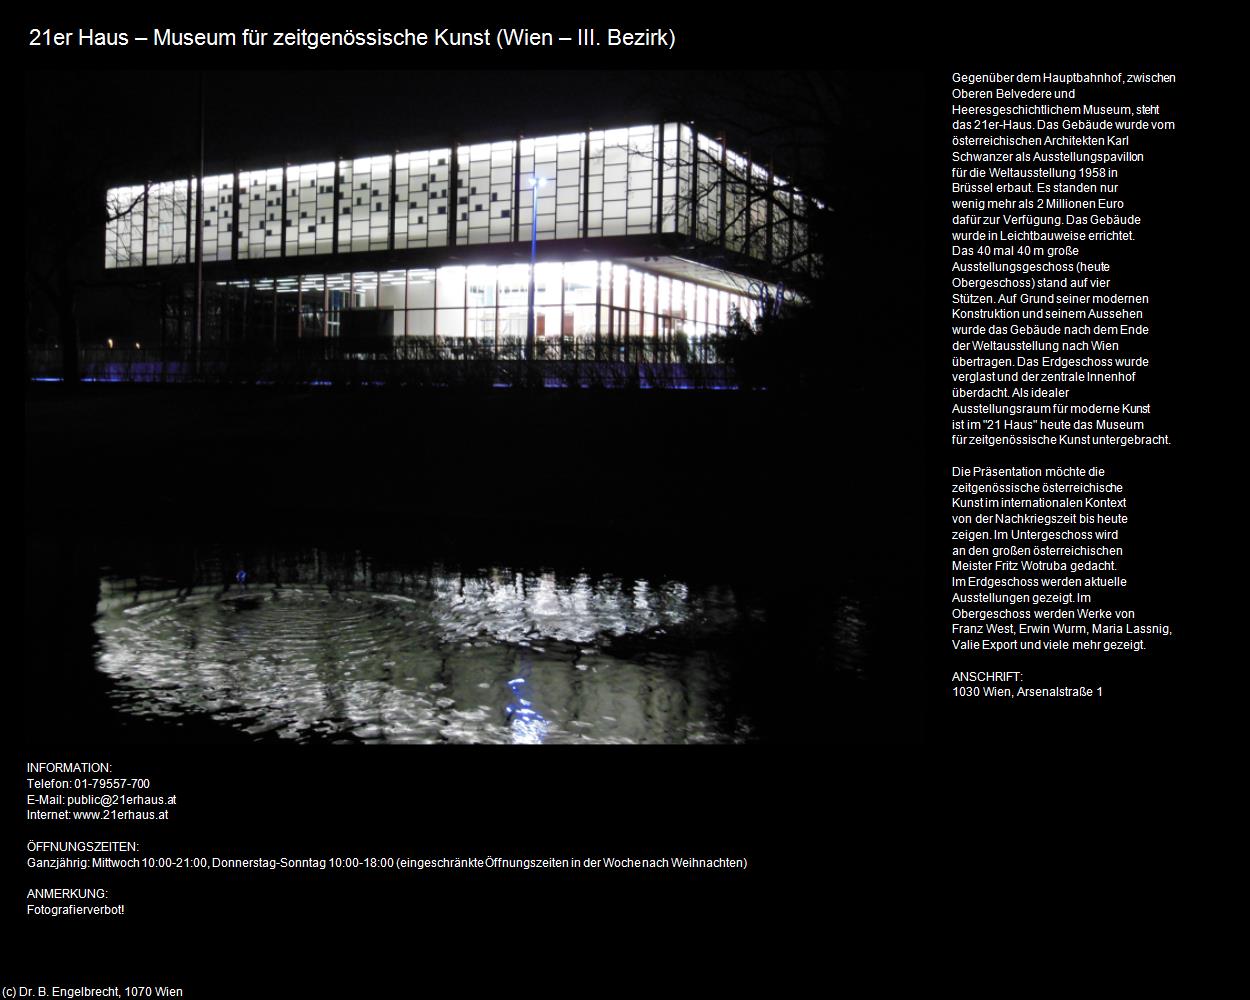 21er Haus - Museum für zeitgenössische Kunst  (Belvedere) in Kulturatlas-WIEN